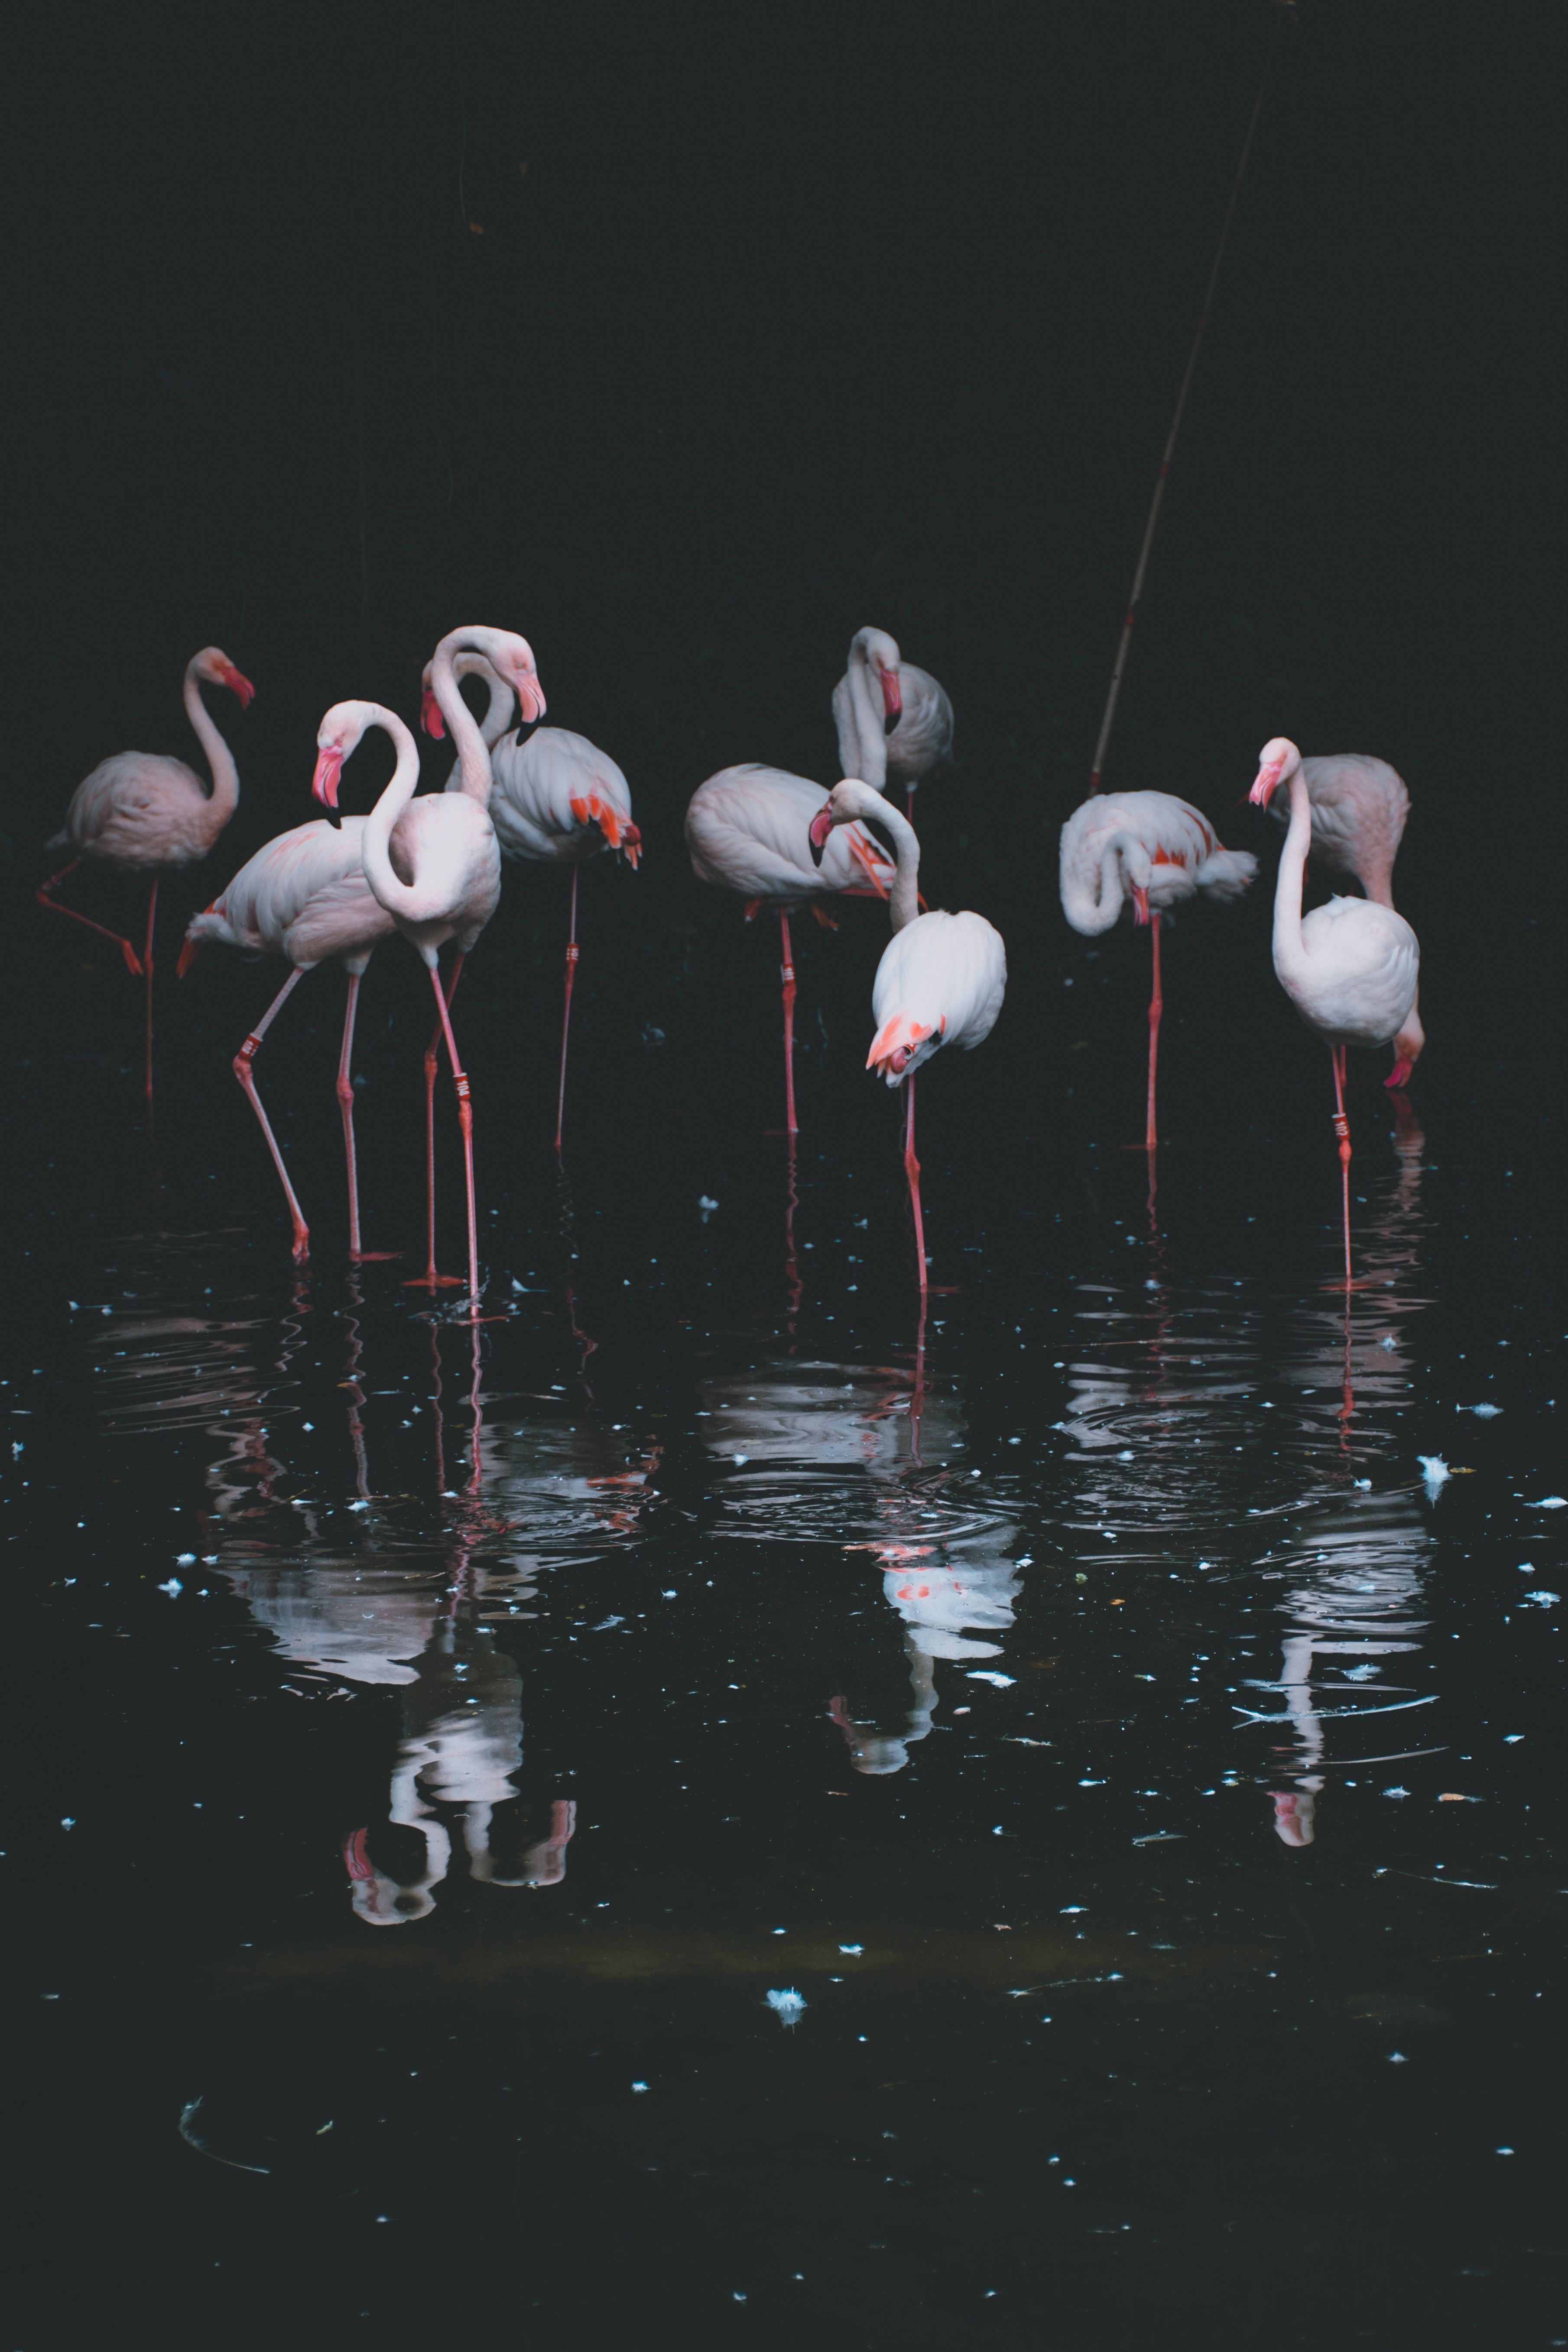  Flamingo Hintergrundbild 3619x5429. Hintergrundbild für Handys: Becken, Reflexion, Vögel, Flamingo, Wasser, Dunkel, 61938 Bild kostenlos herunterladen